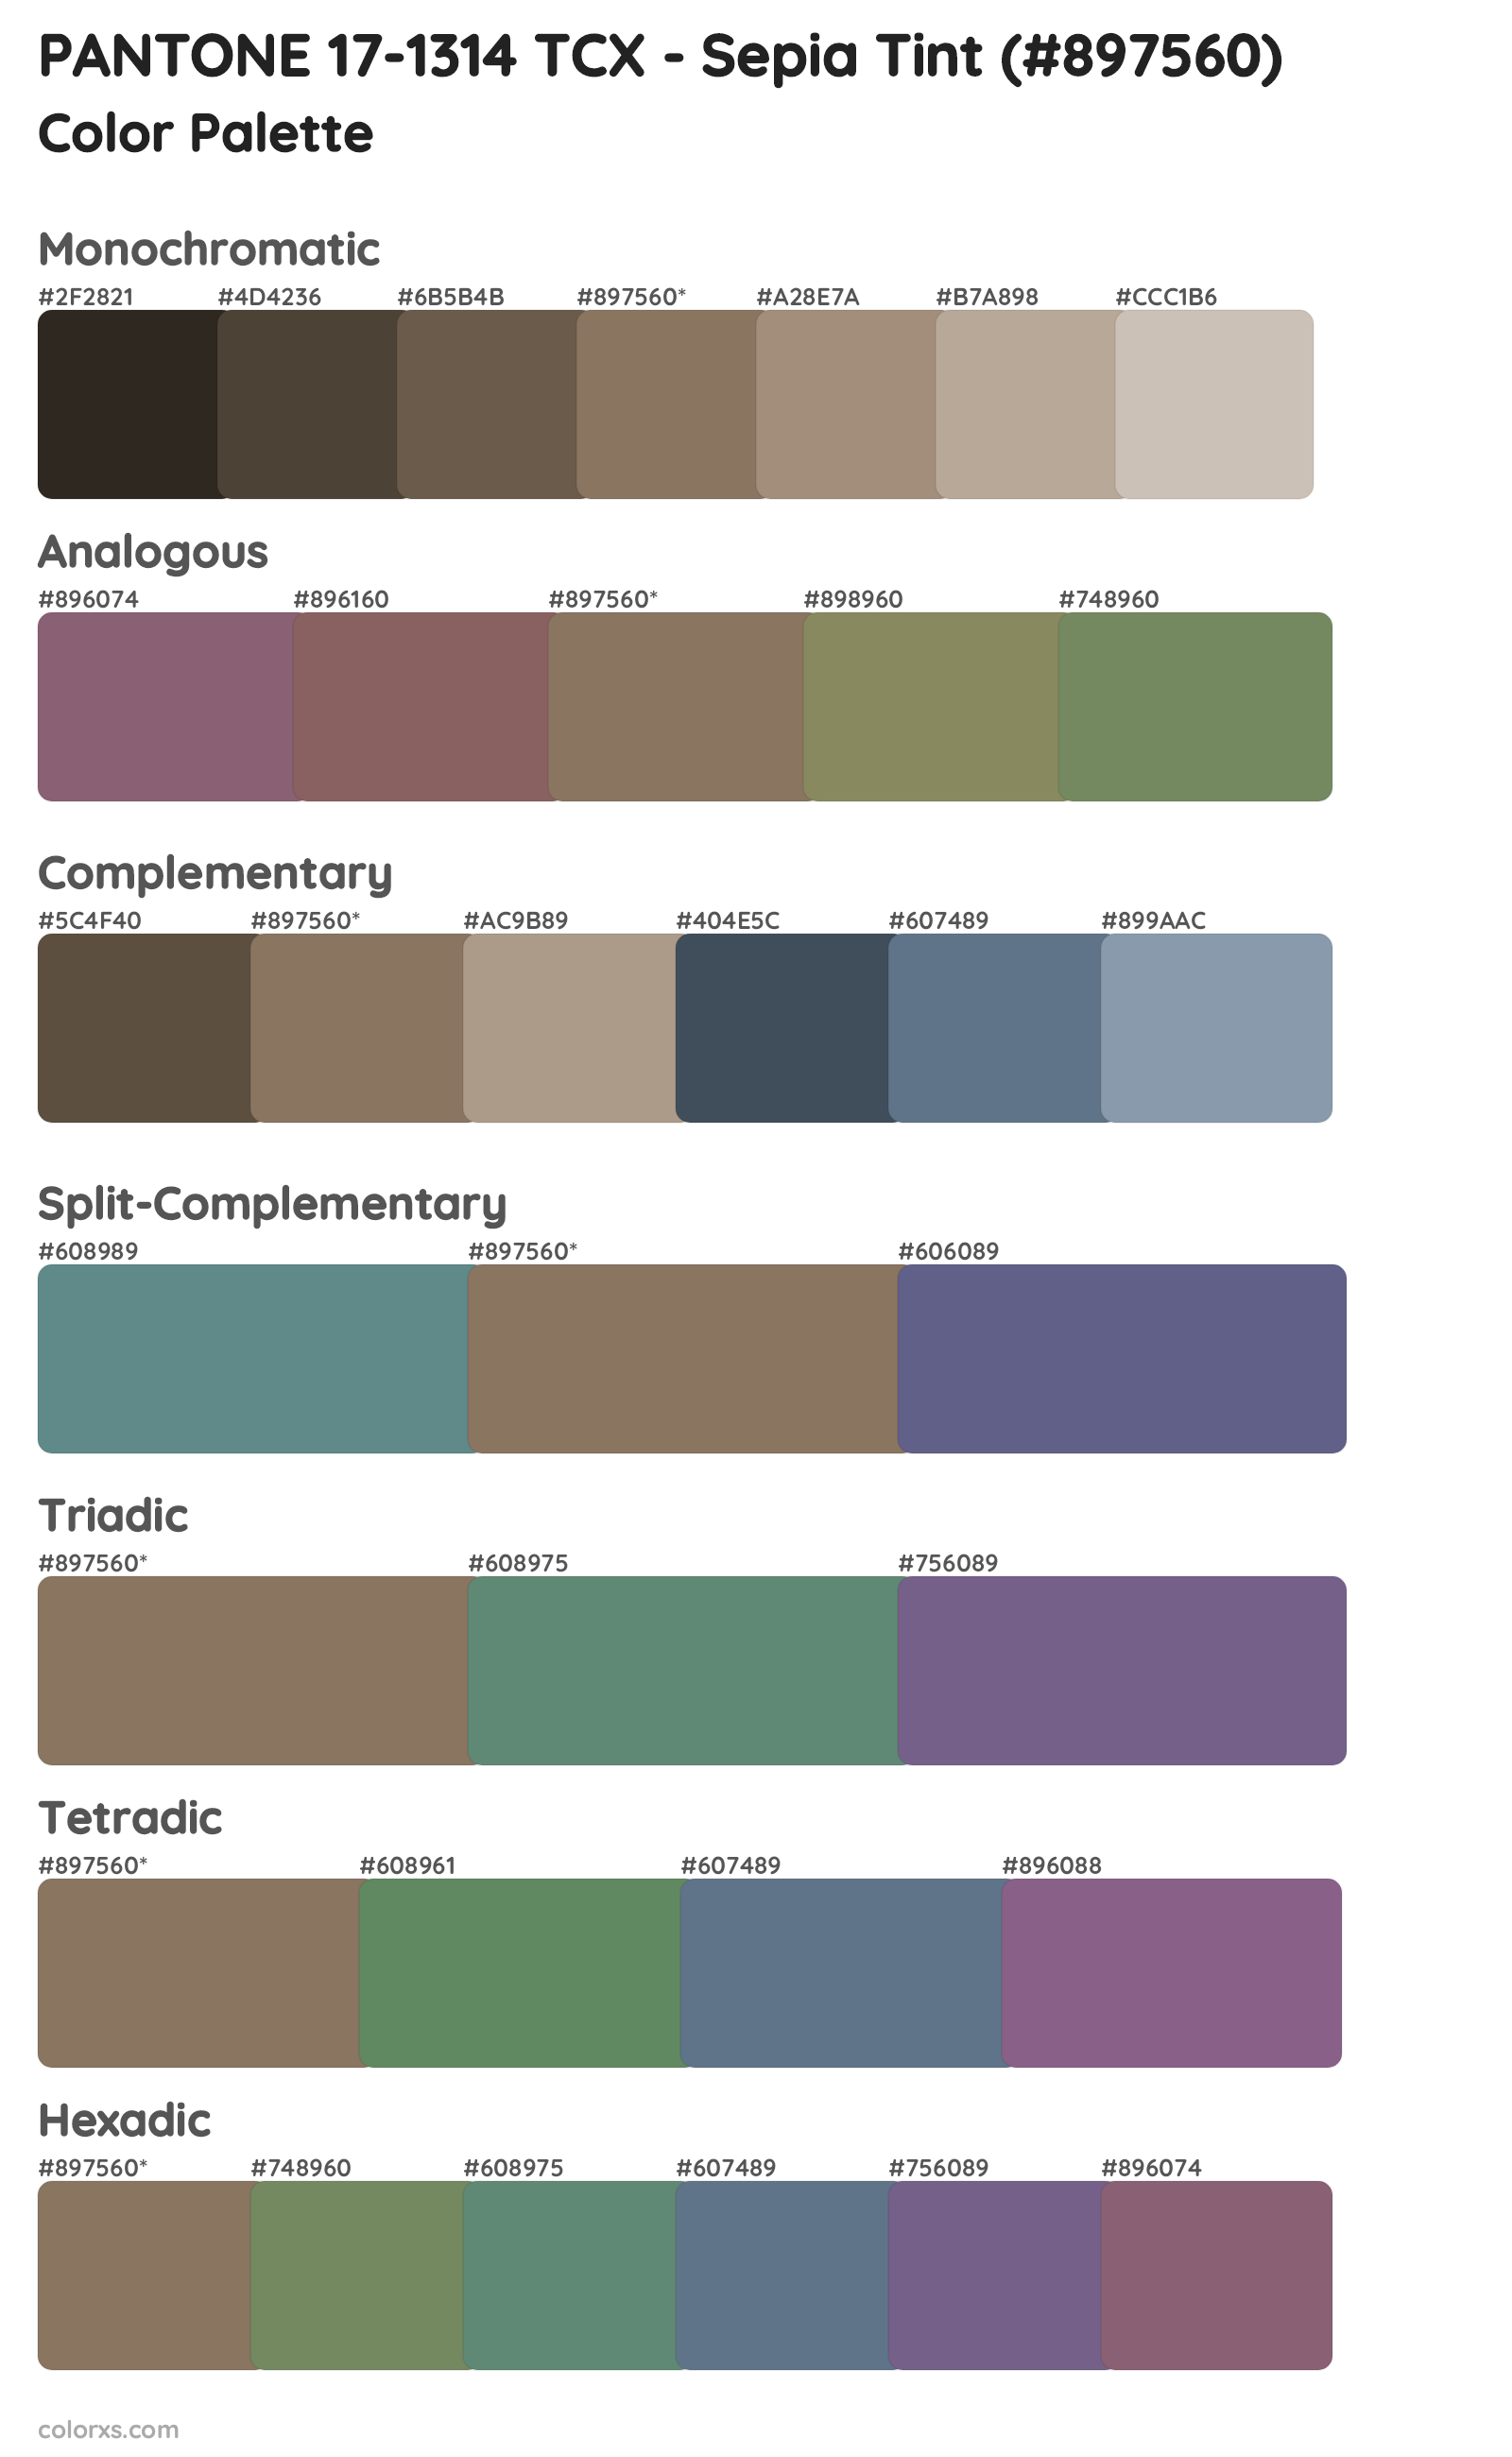 PANTONE 17-1314 TCX - Sepia Tint Color Scheme Palettes